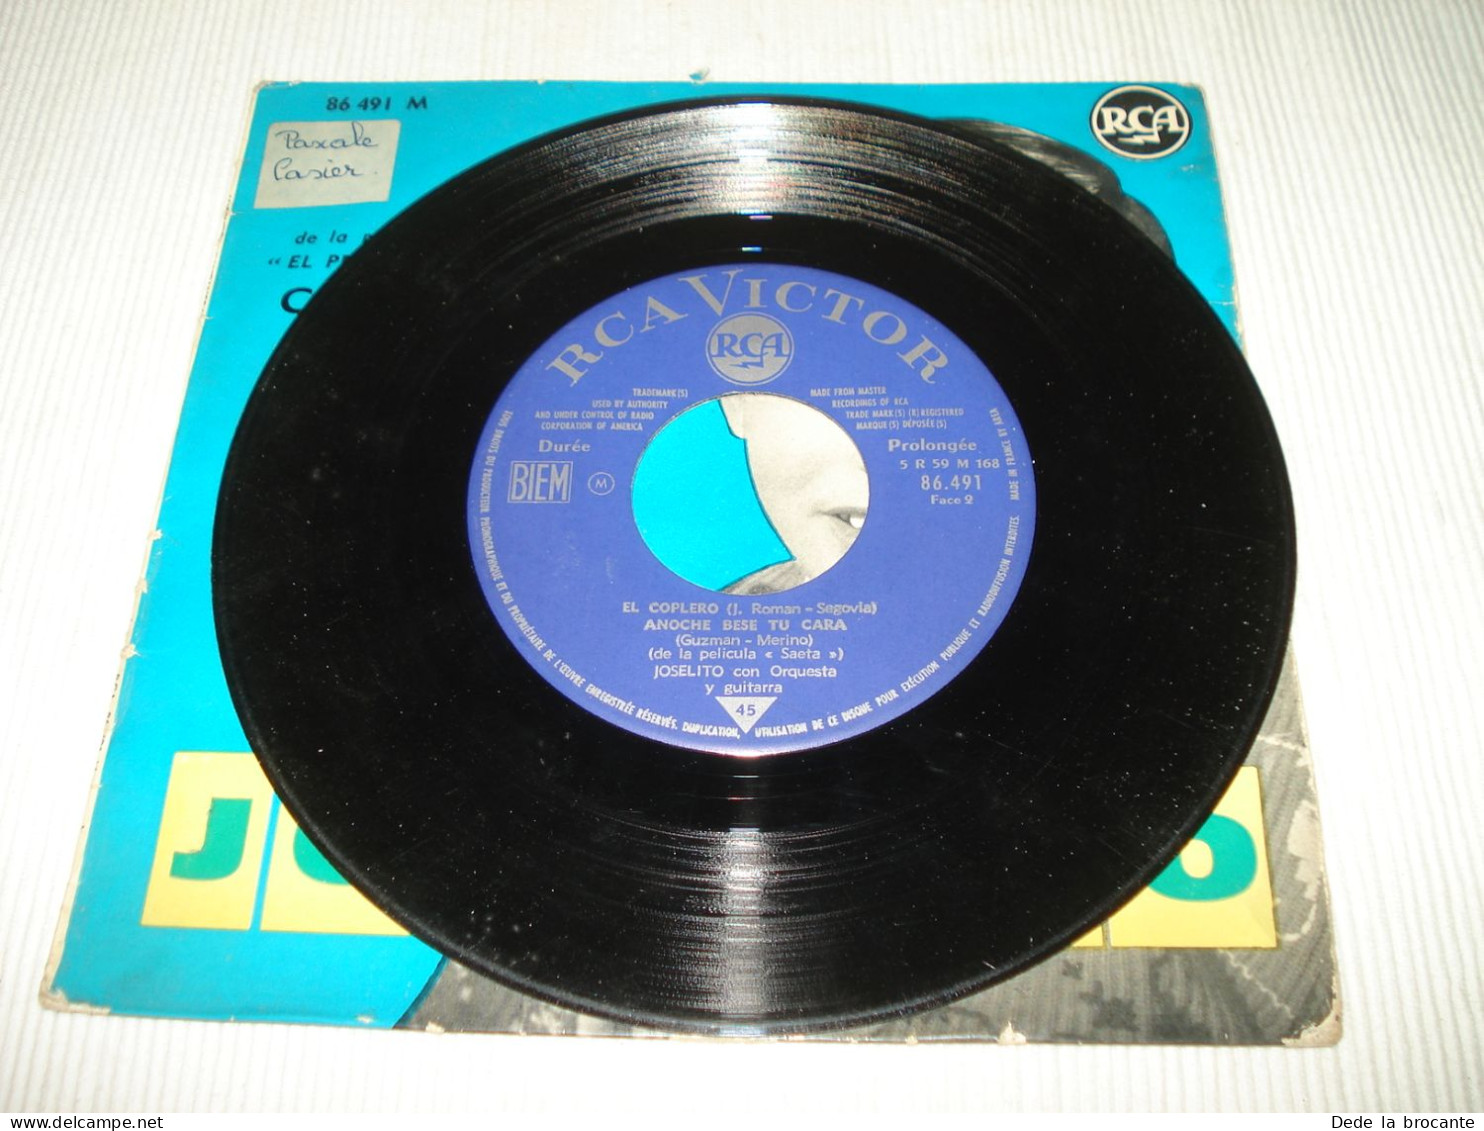 B12 / Joselito – Musique Film Campanera – EP - RCA – 86.491 - FR 1963 -  EX/VG+ - Filmmusik